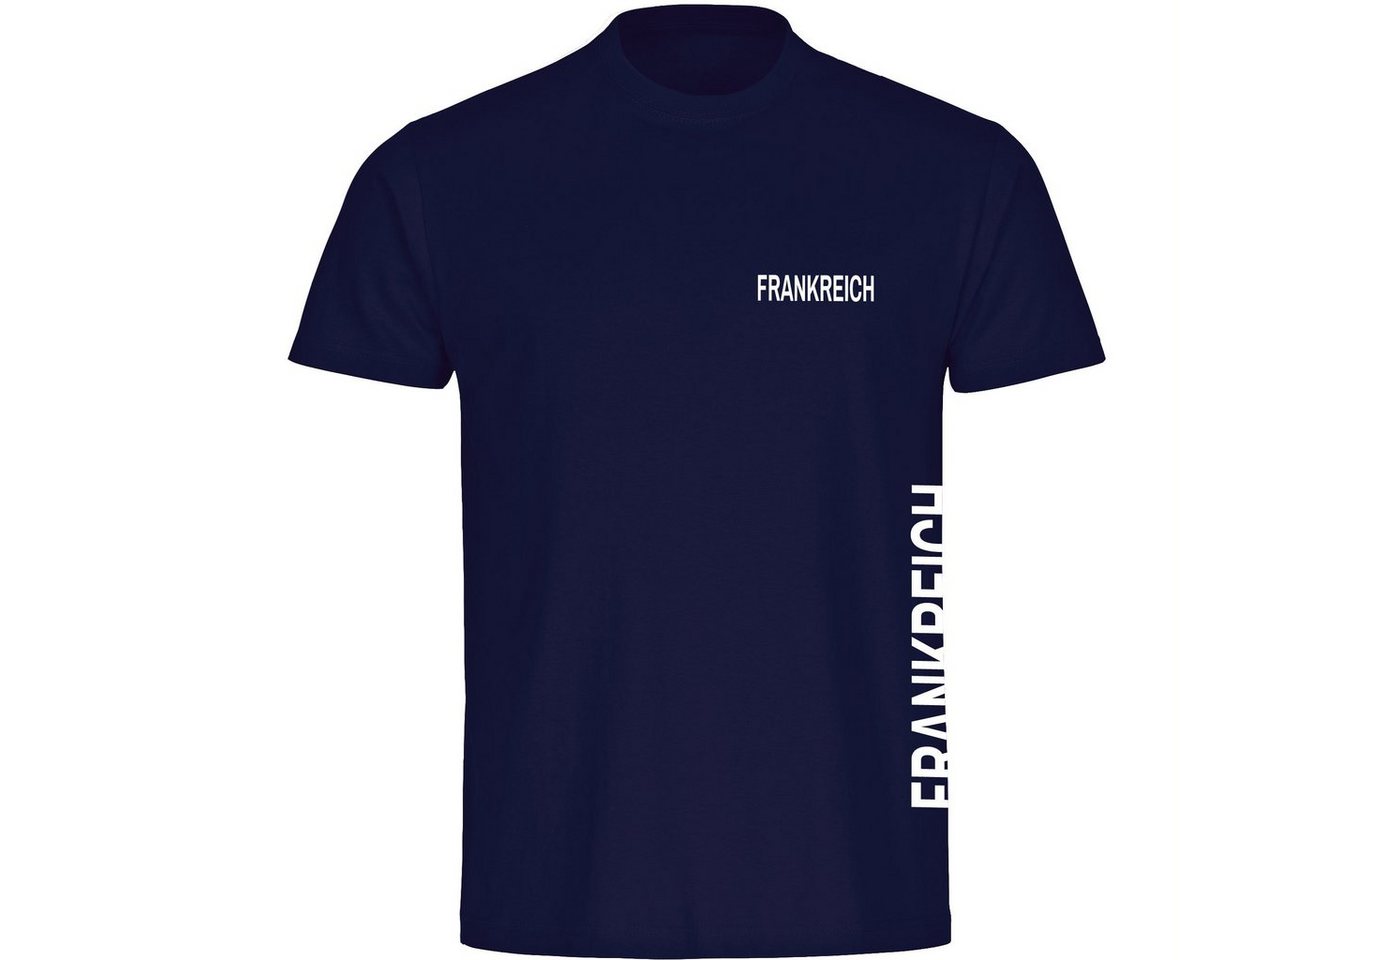 multifanshop T-Shirt Herren Frankreich - Brust & Seite - Männer von multifanshop